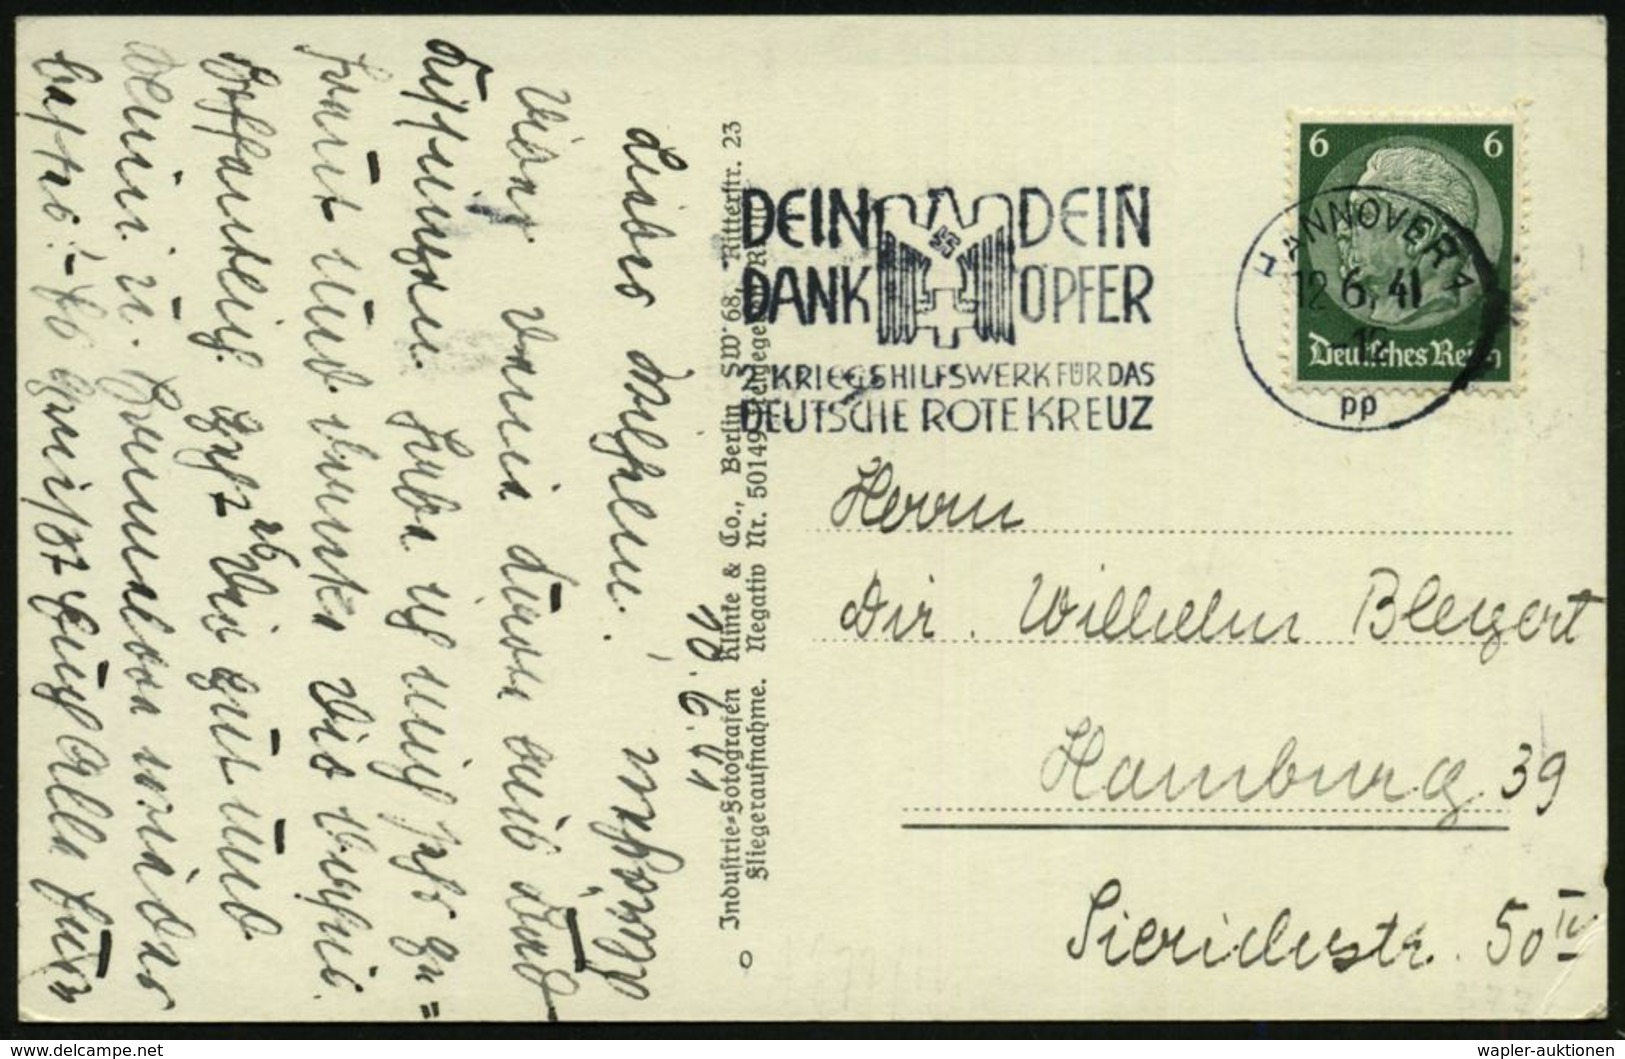 HANNOVER 1/ Pp/ DEIN/ DANK/ DEIN/ OPFER/ 2.KRIEGSHILFSWERK FÜR DAS/ DRK 1941 (12.6.) MWSt (NS-DRK-Logo) Klar Gest. S/w.- - Rotes Kreuz